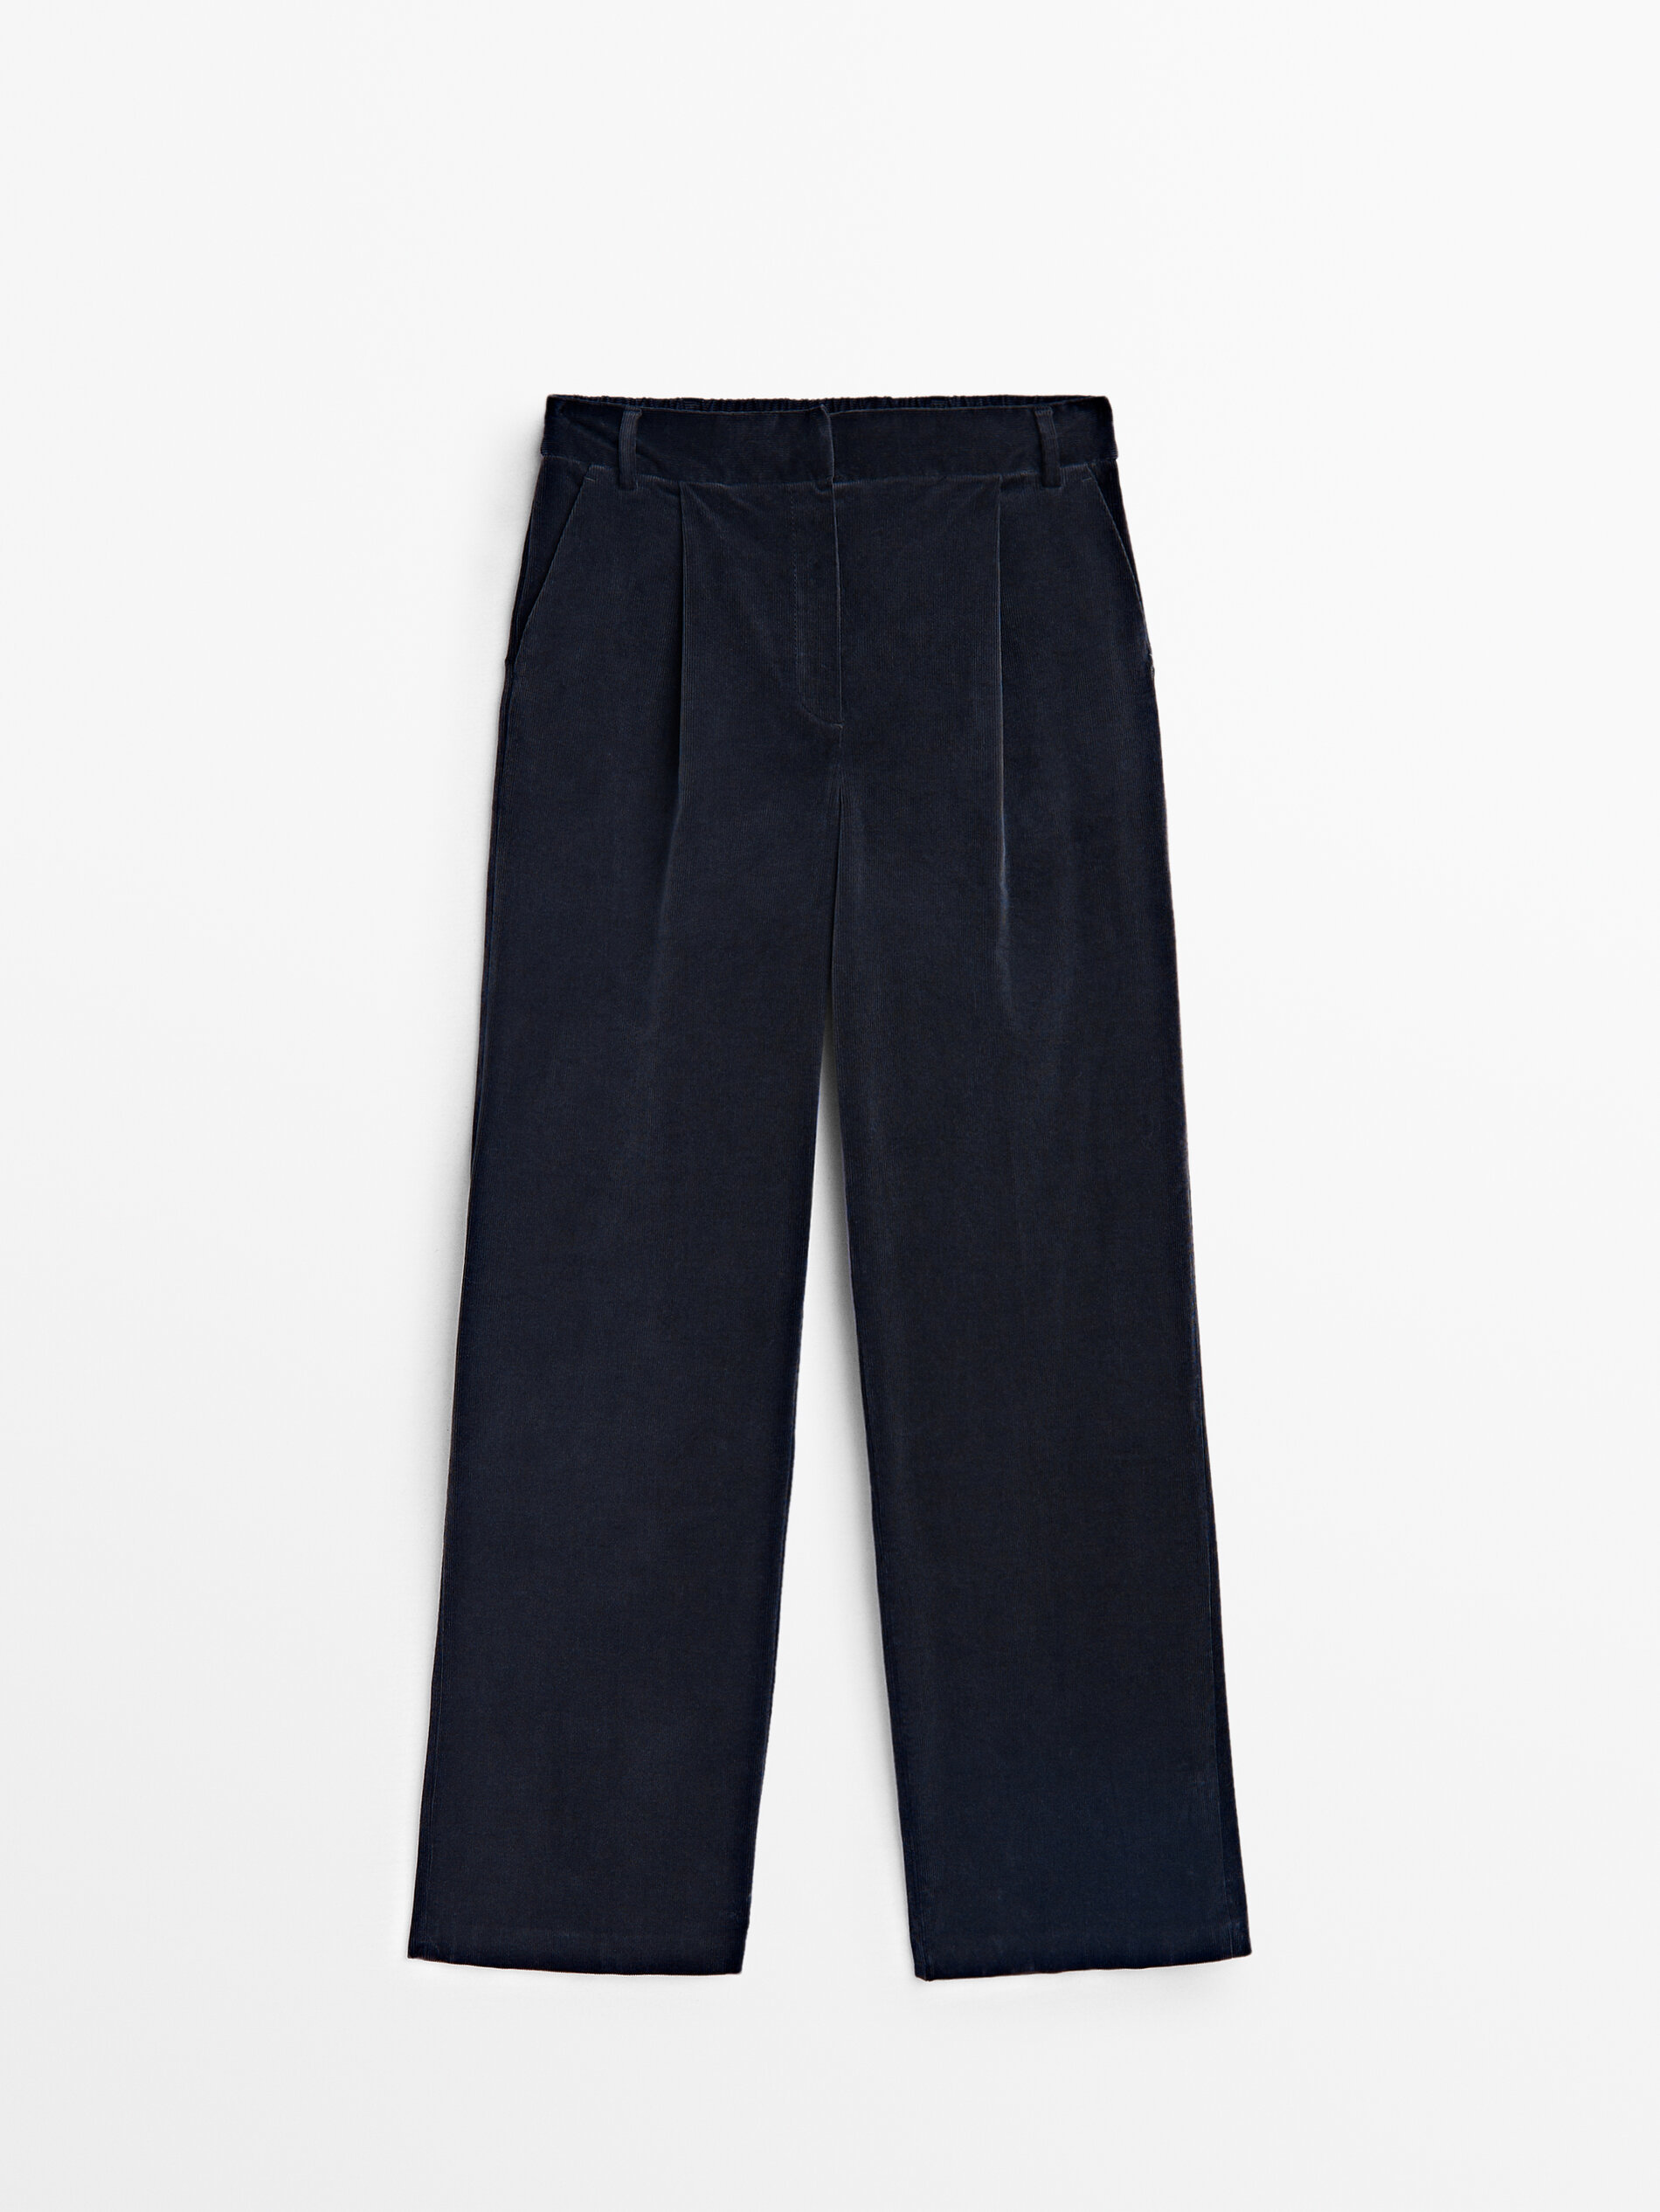 Pantalón de pana con cintura elástica de Massimo Dutti para este otoño-invierno